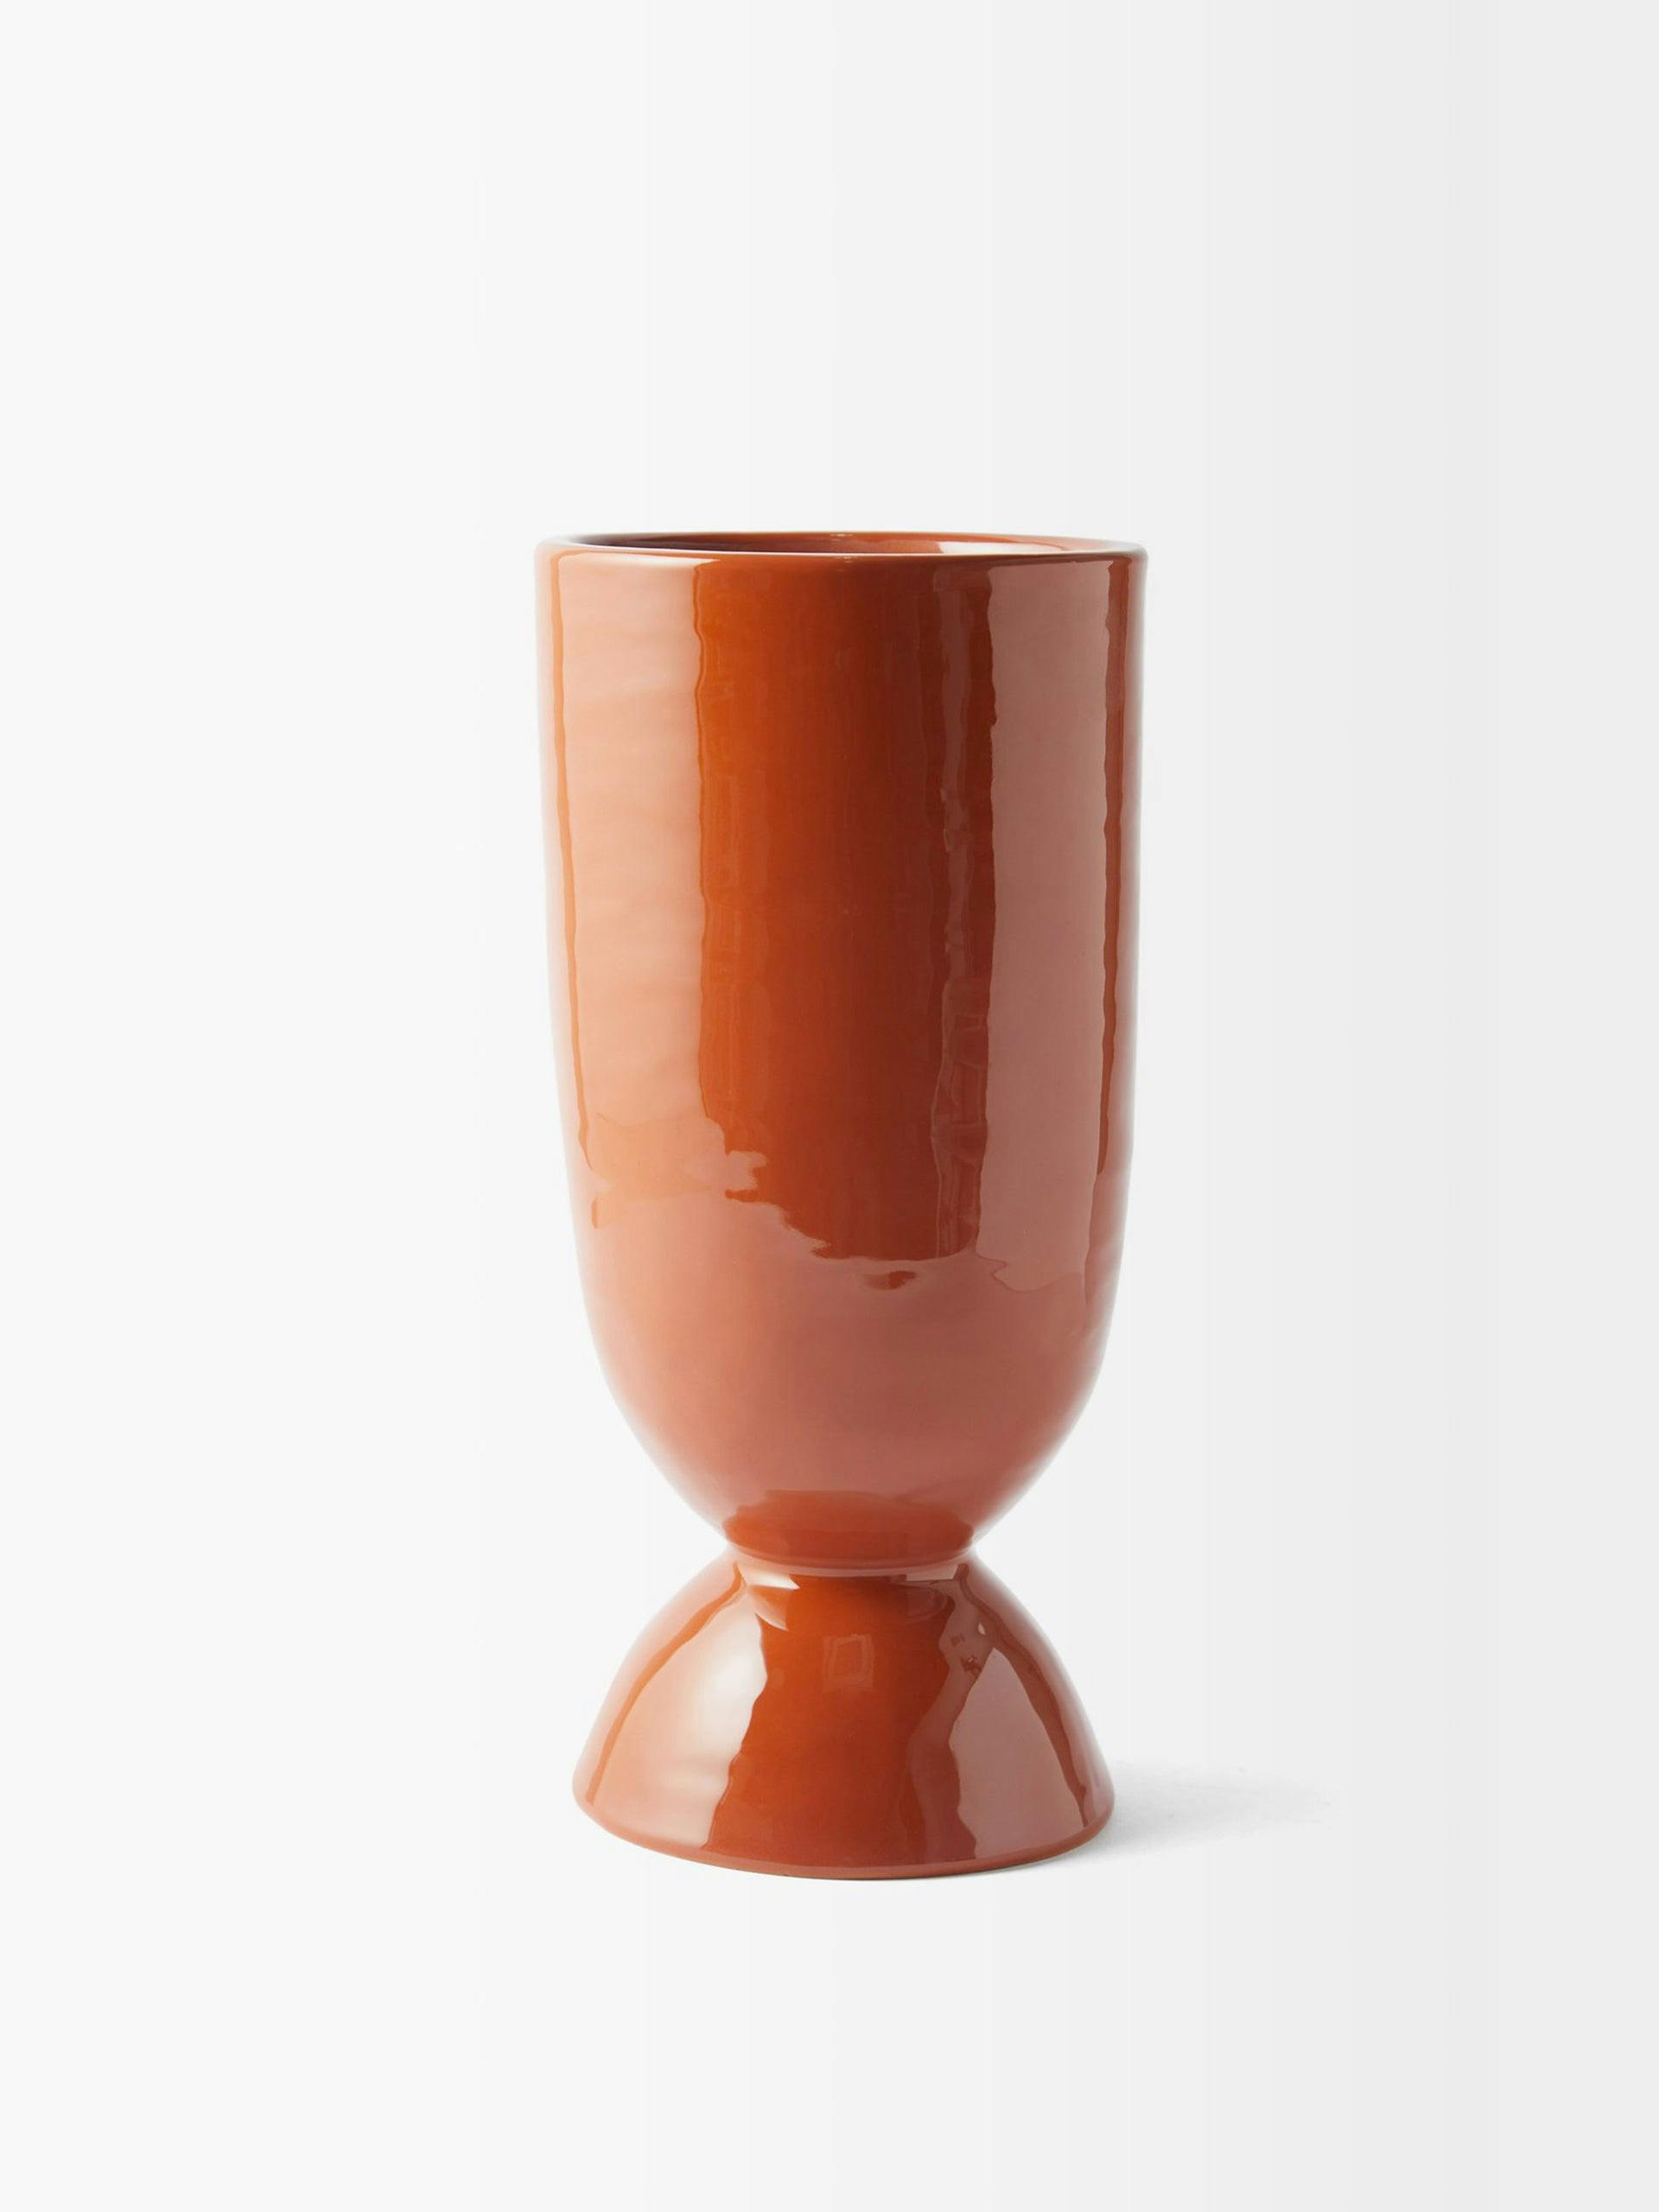 Santa ceramic vase